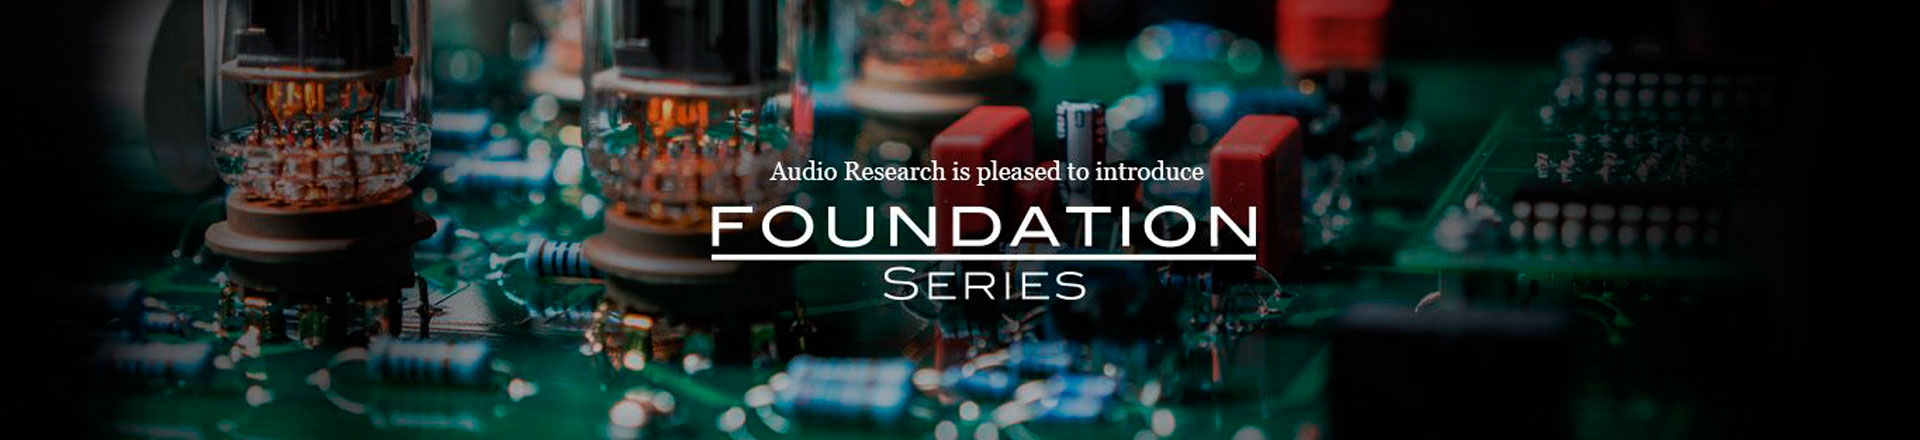 Foundation - nowa seria urządzeń Audio Research